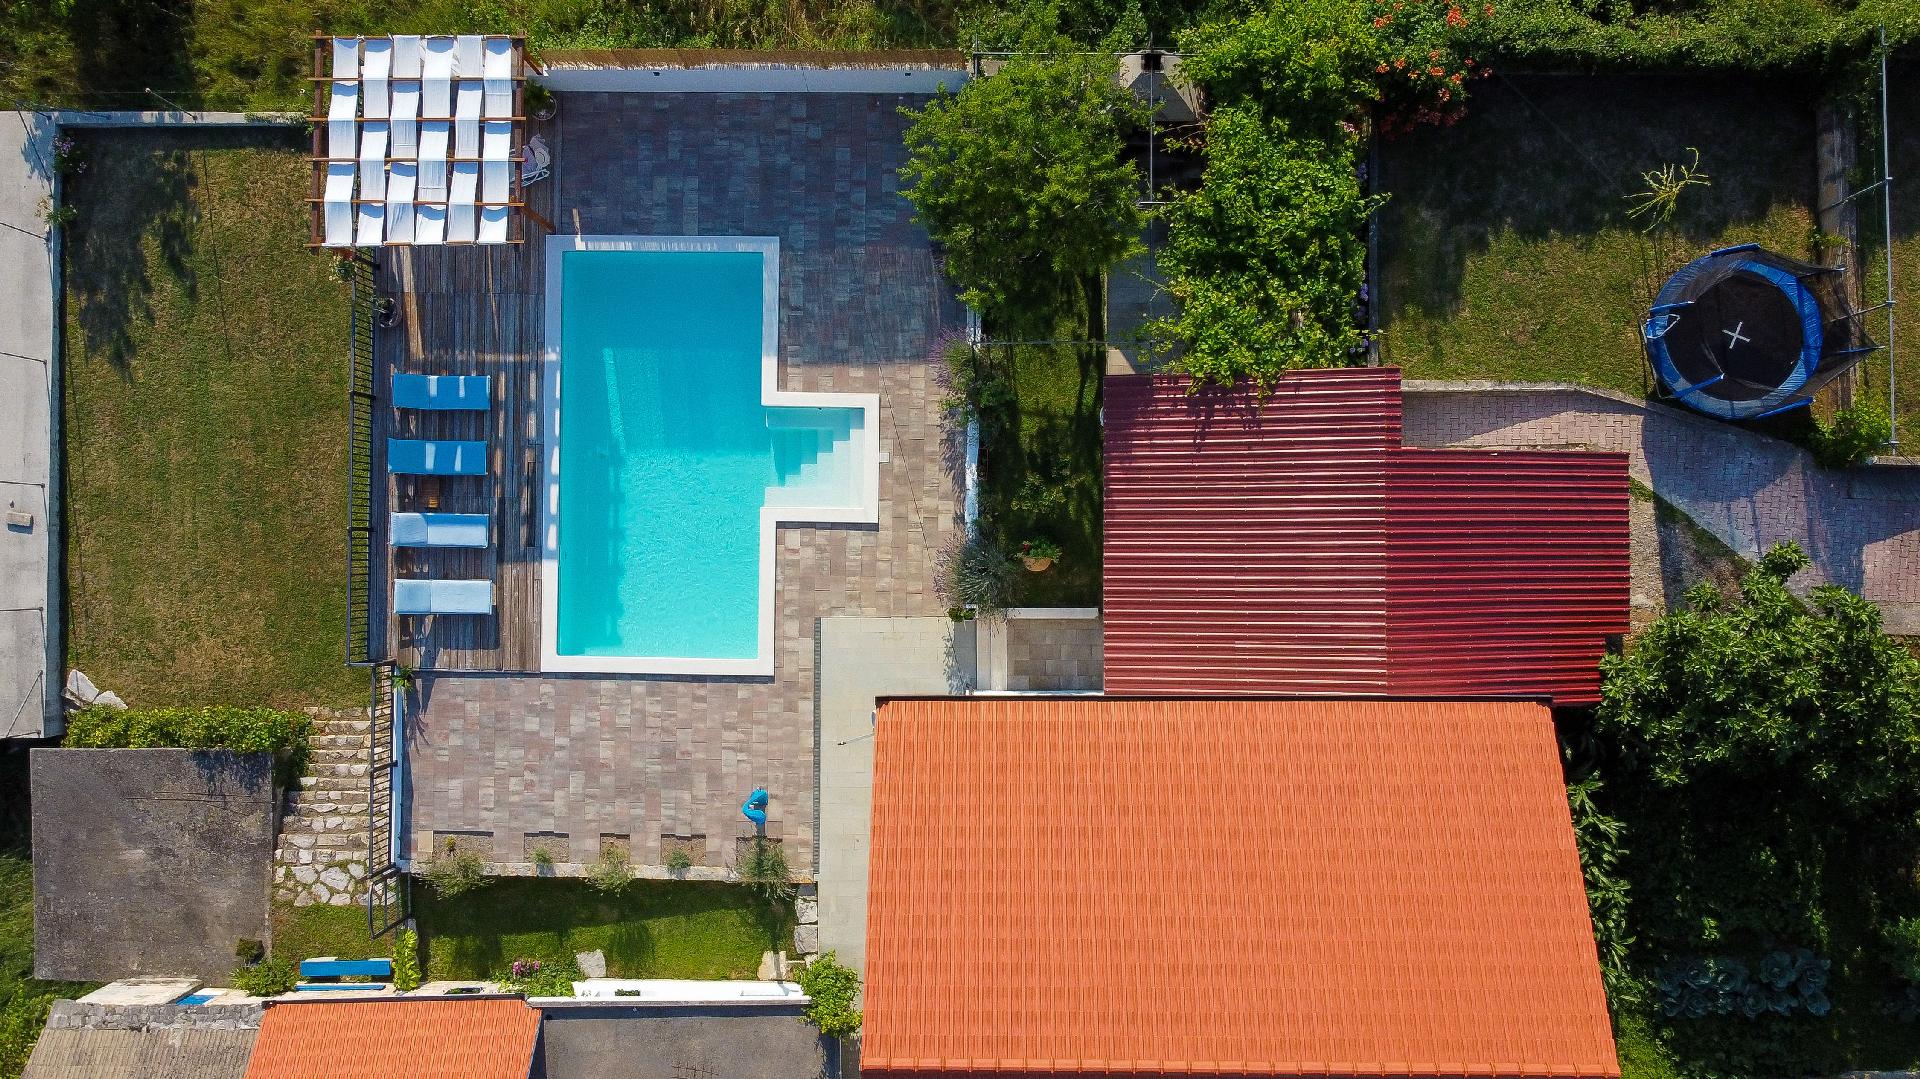 Ferienhaus mit Privatpool für 5 Personen  + 3 Ferienwohnung  kroatische Inseln